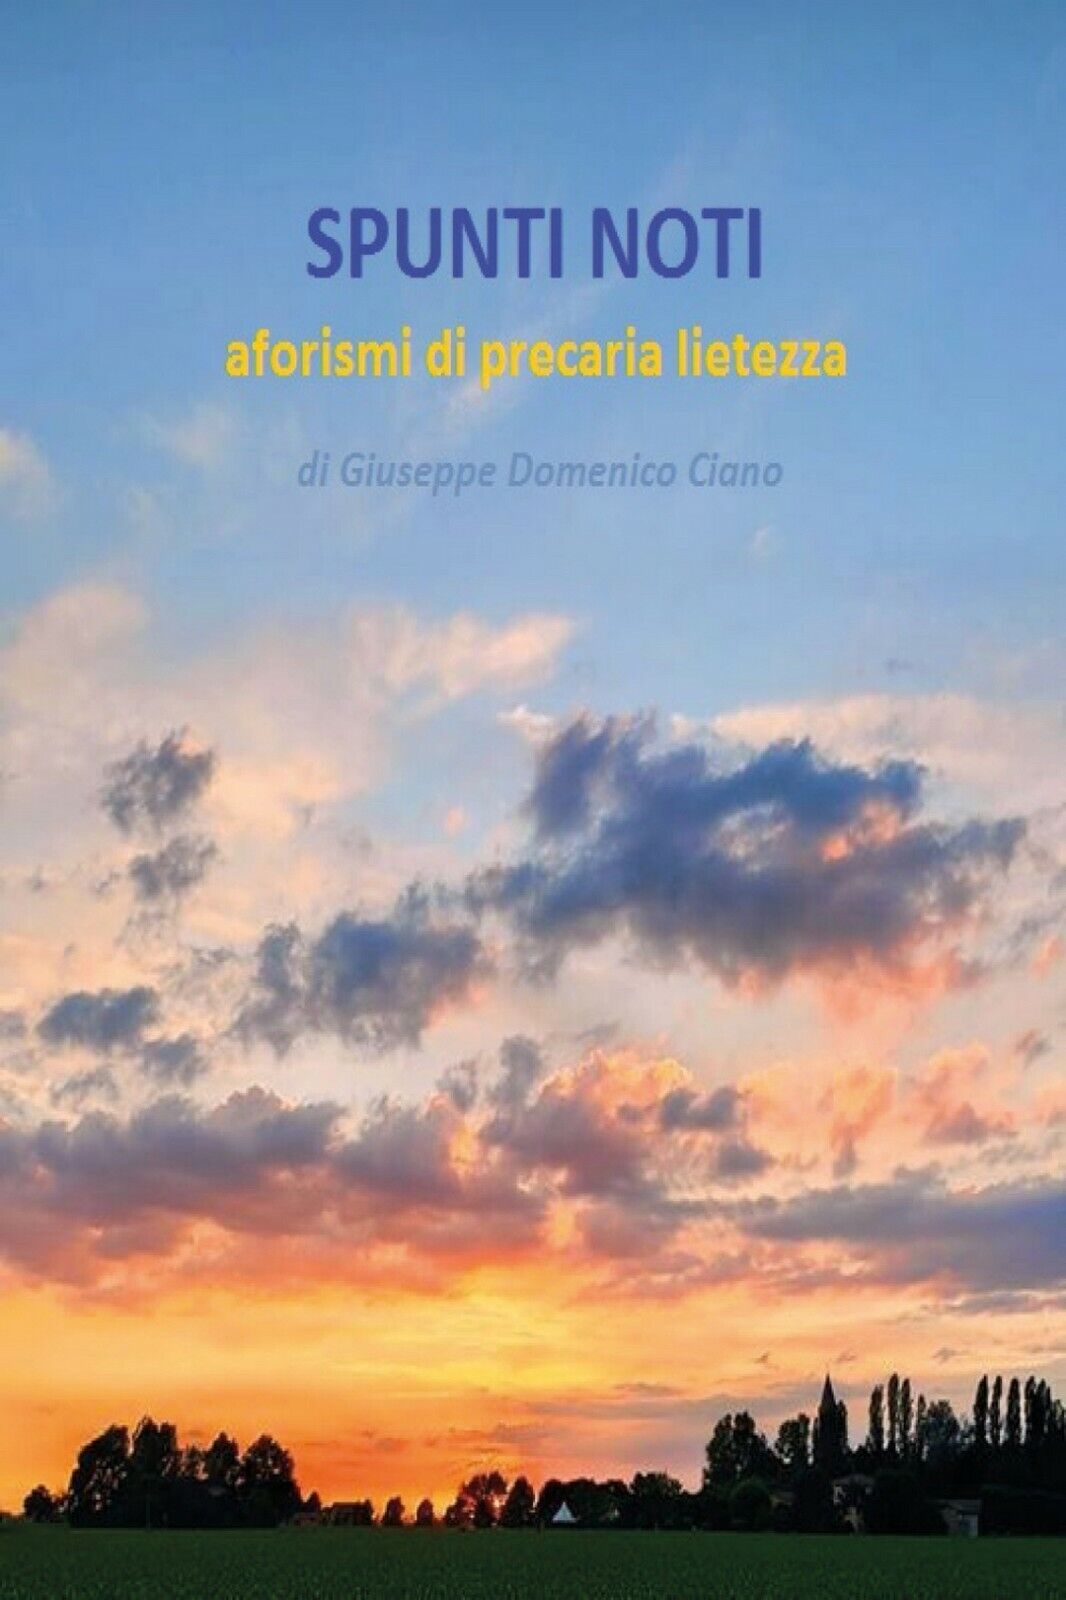 SPUNTI NOTI - aforismi di precaria lietezza, Giuseppe Ciano,  2020,  Youcanprint